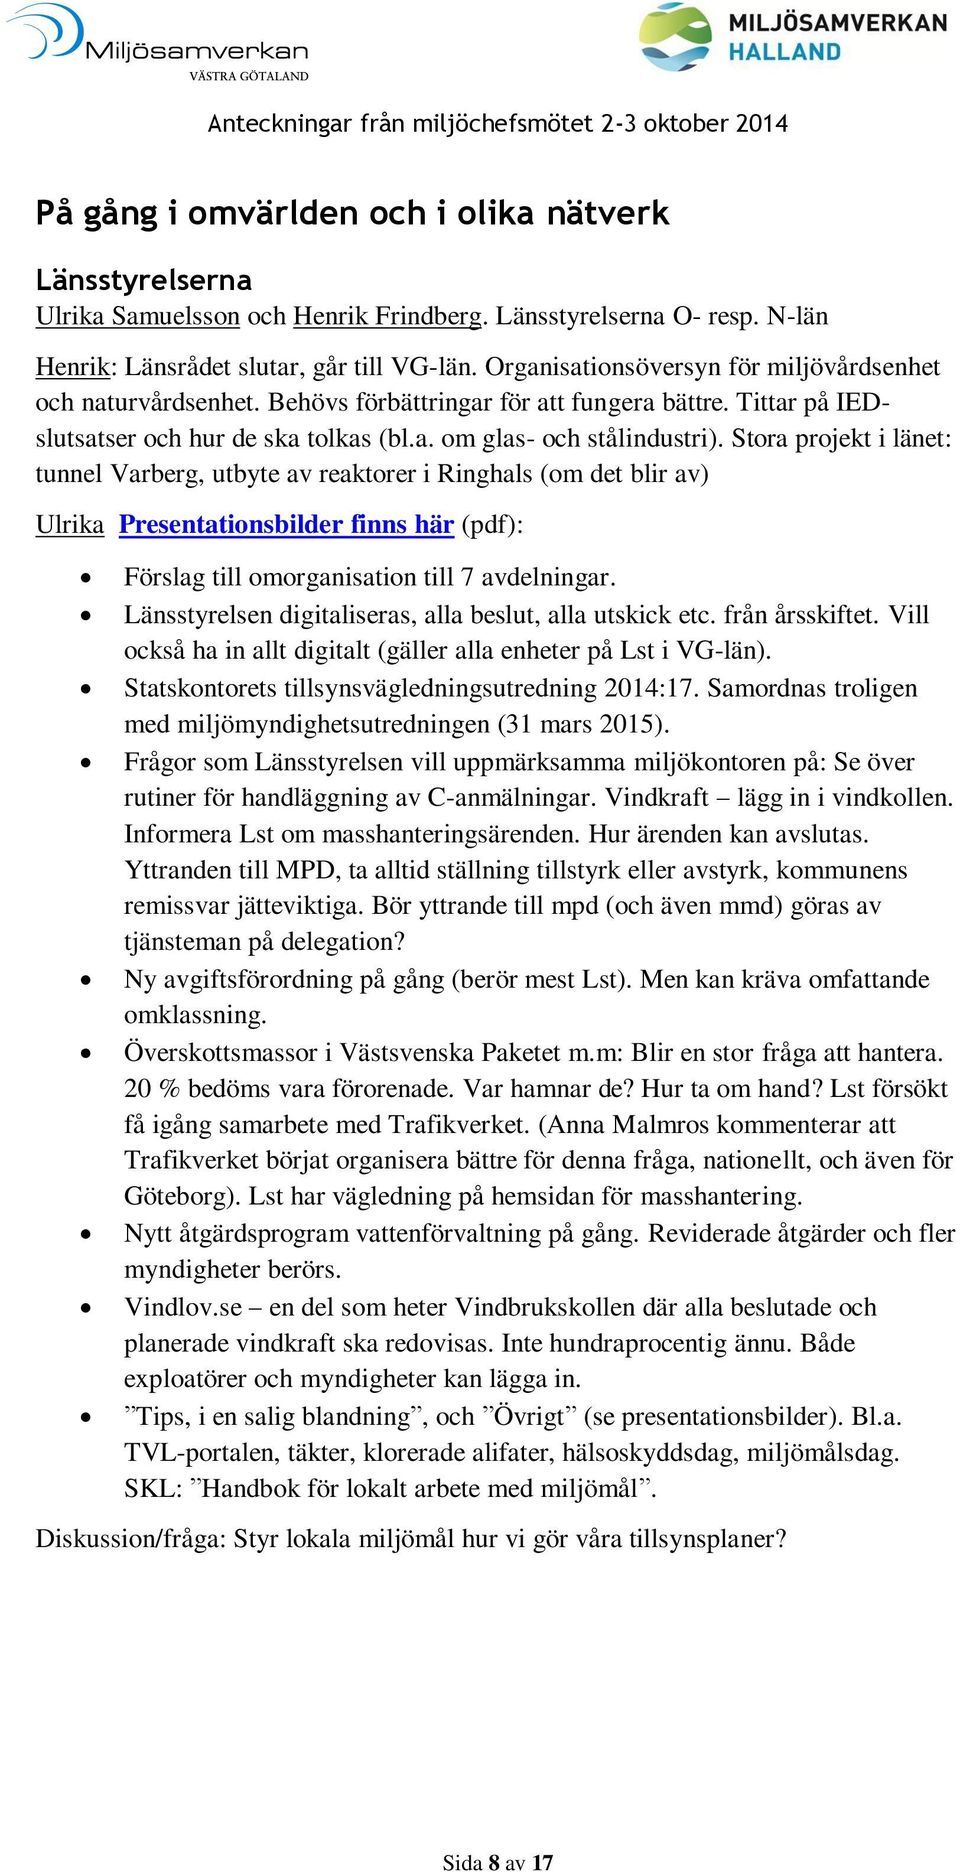 Stora projekt i länet: tunnel Varberg, utbyte av reaktorer i Ringhals (om det blir av) Ulrika Presentationsbilder finns här (pdf): Förslag till omorganisation till 7 avdelningar.